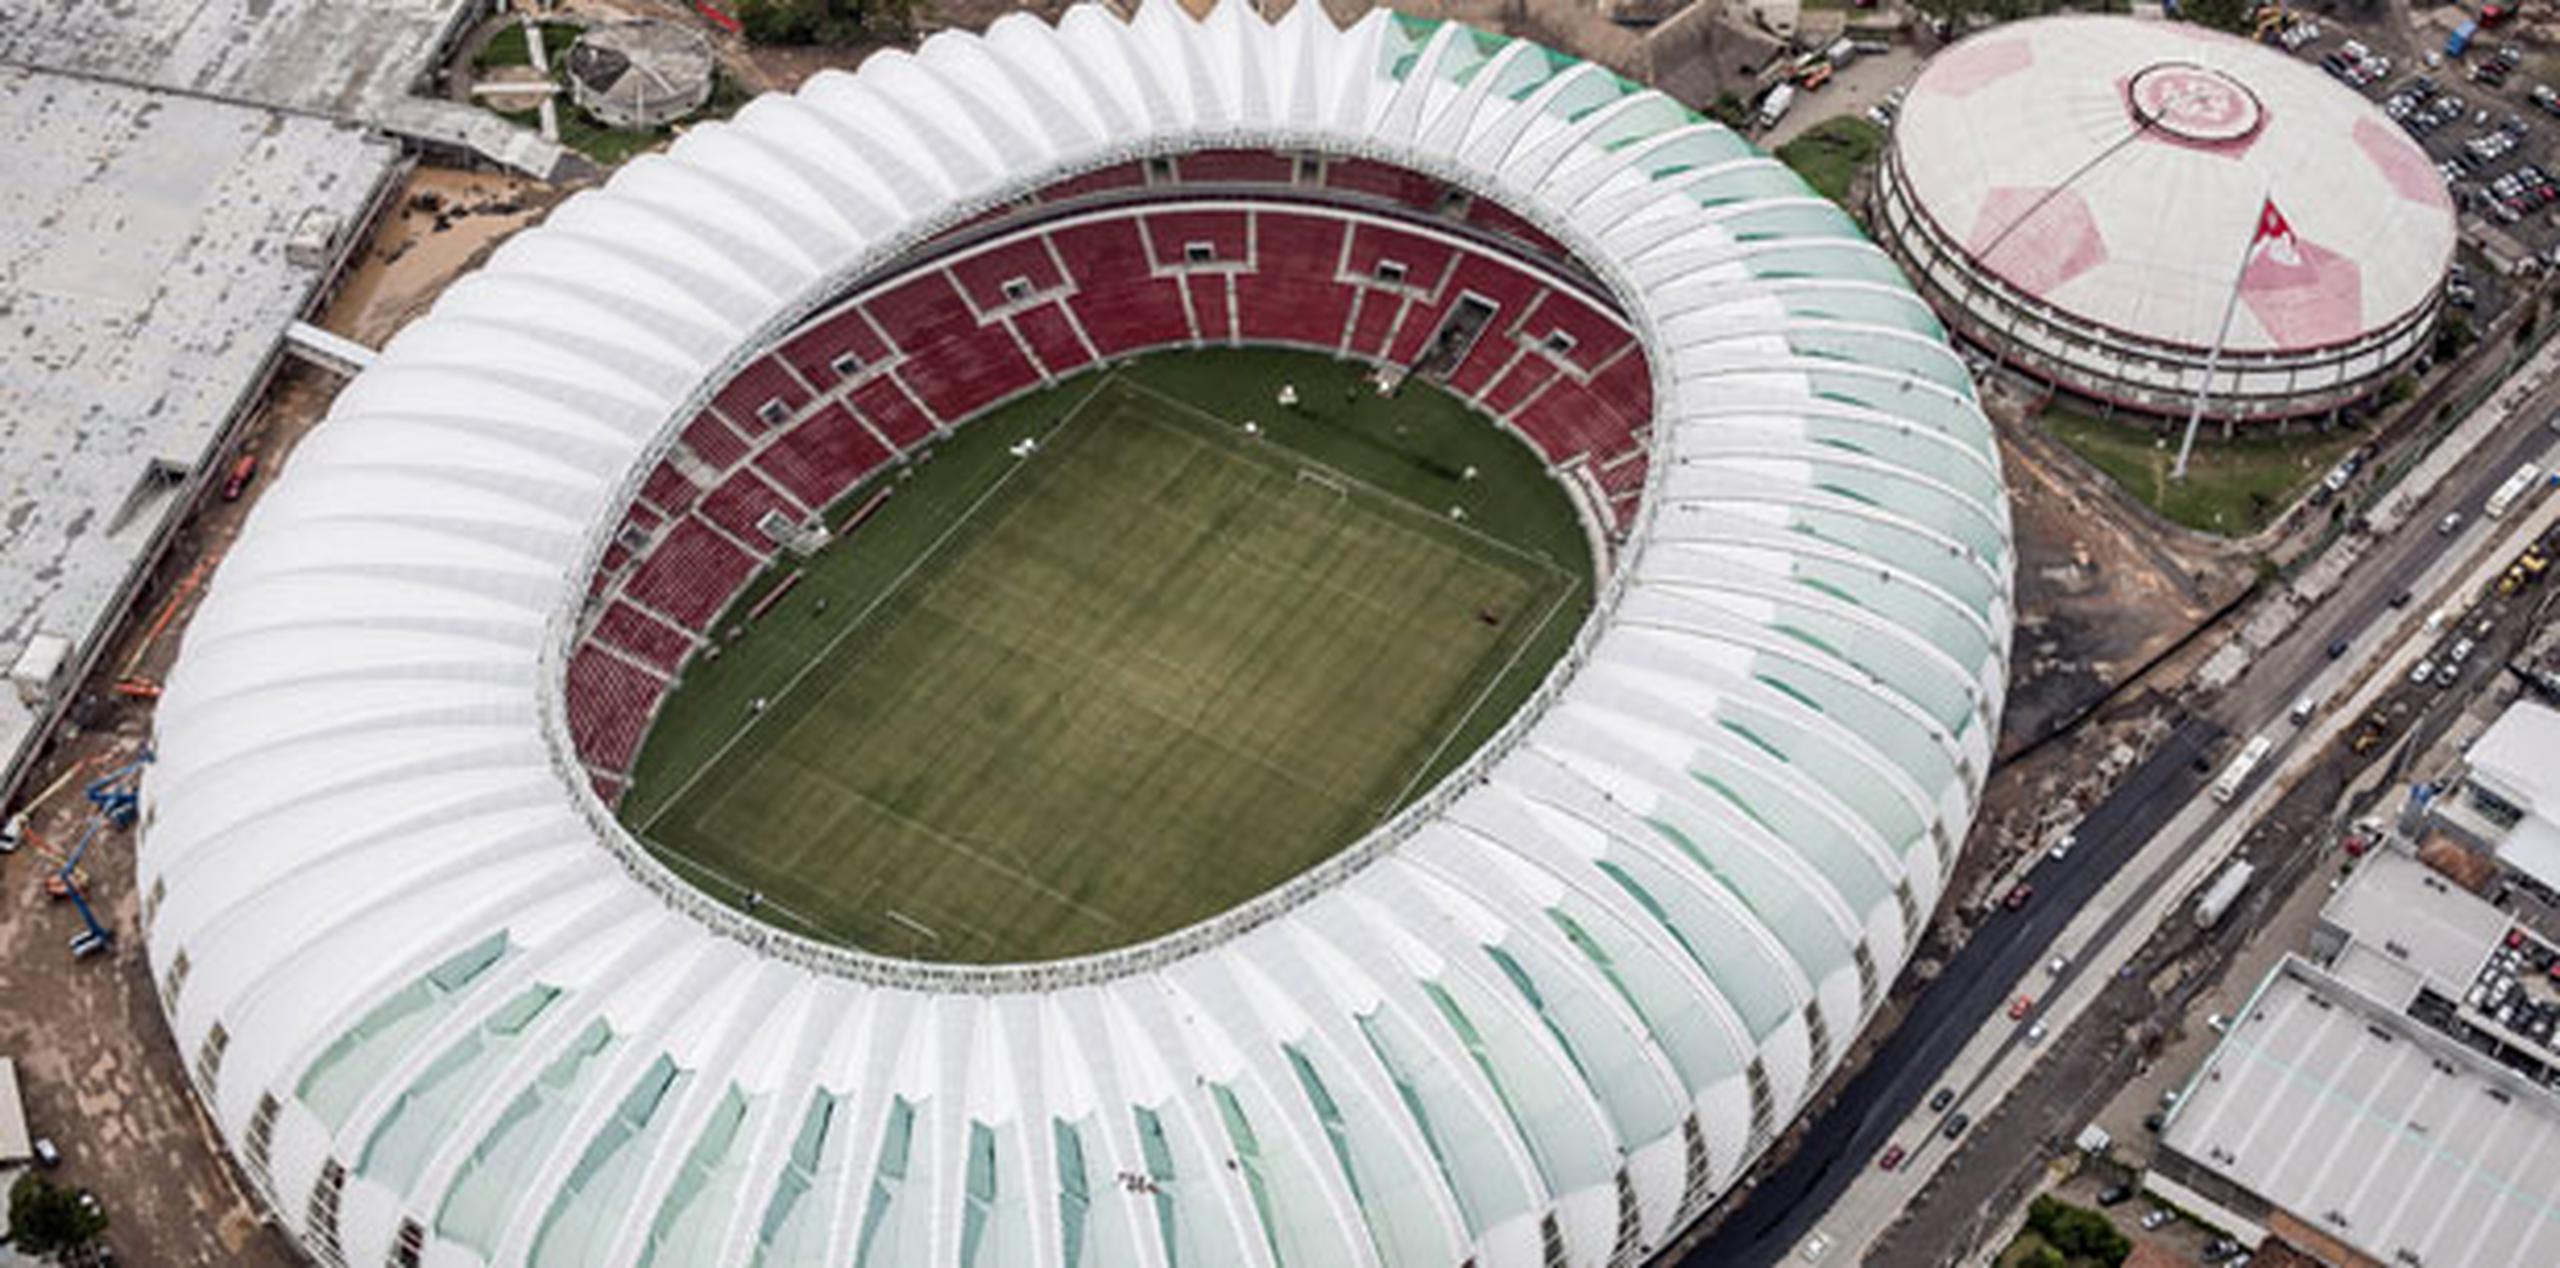 Los cuatro amigos culminarán su jornada en el estadio Beira-Rio de Porto Alegre el 8 de junio. (Foto AP)